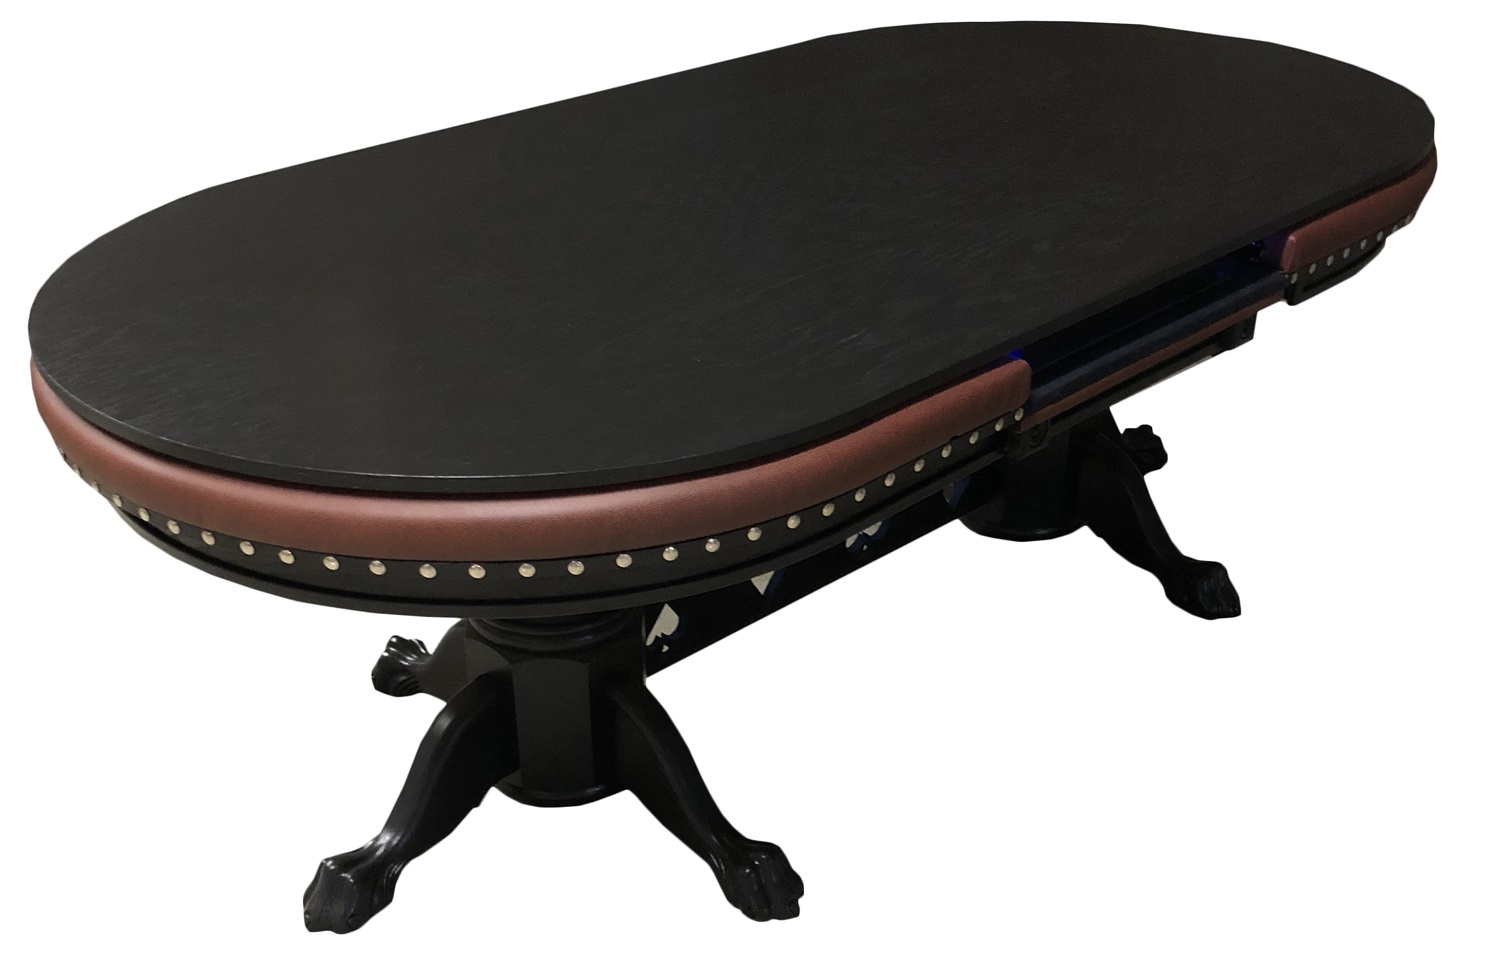 Deluxe raised rail poker tables